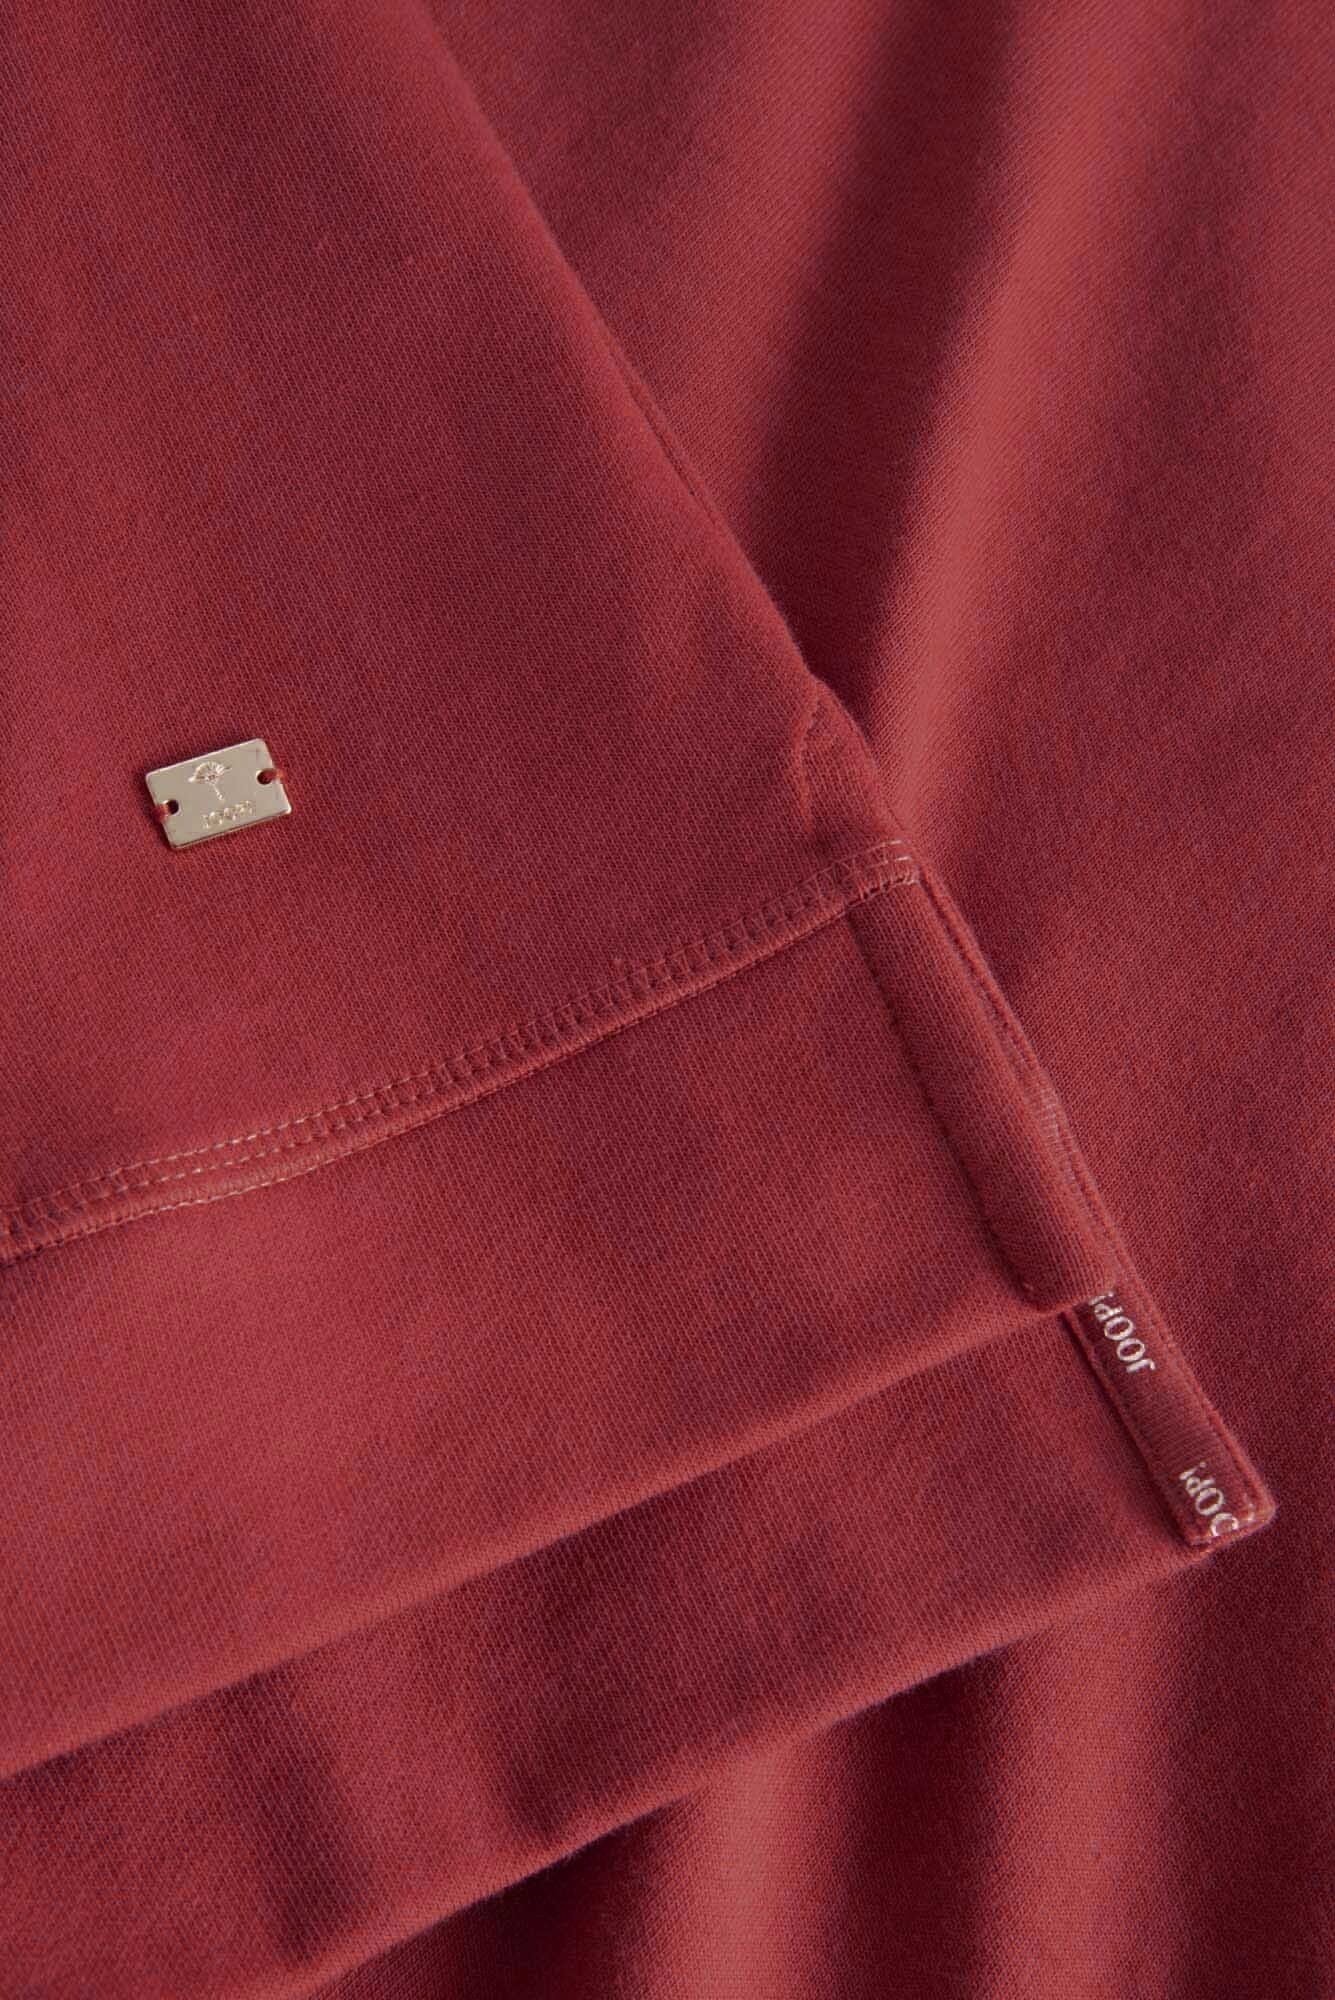 Hoodie Sweatshirt, Rot Sweater, Damen Joop! - Sweater Loungewear